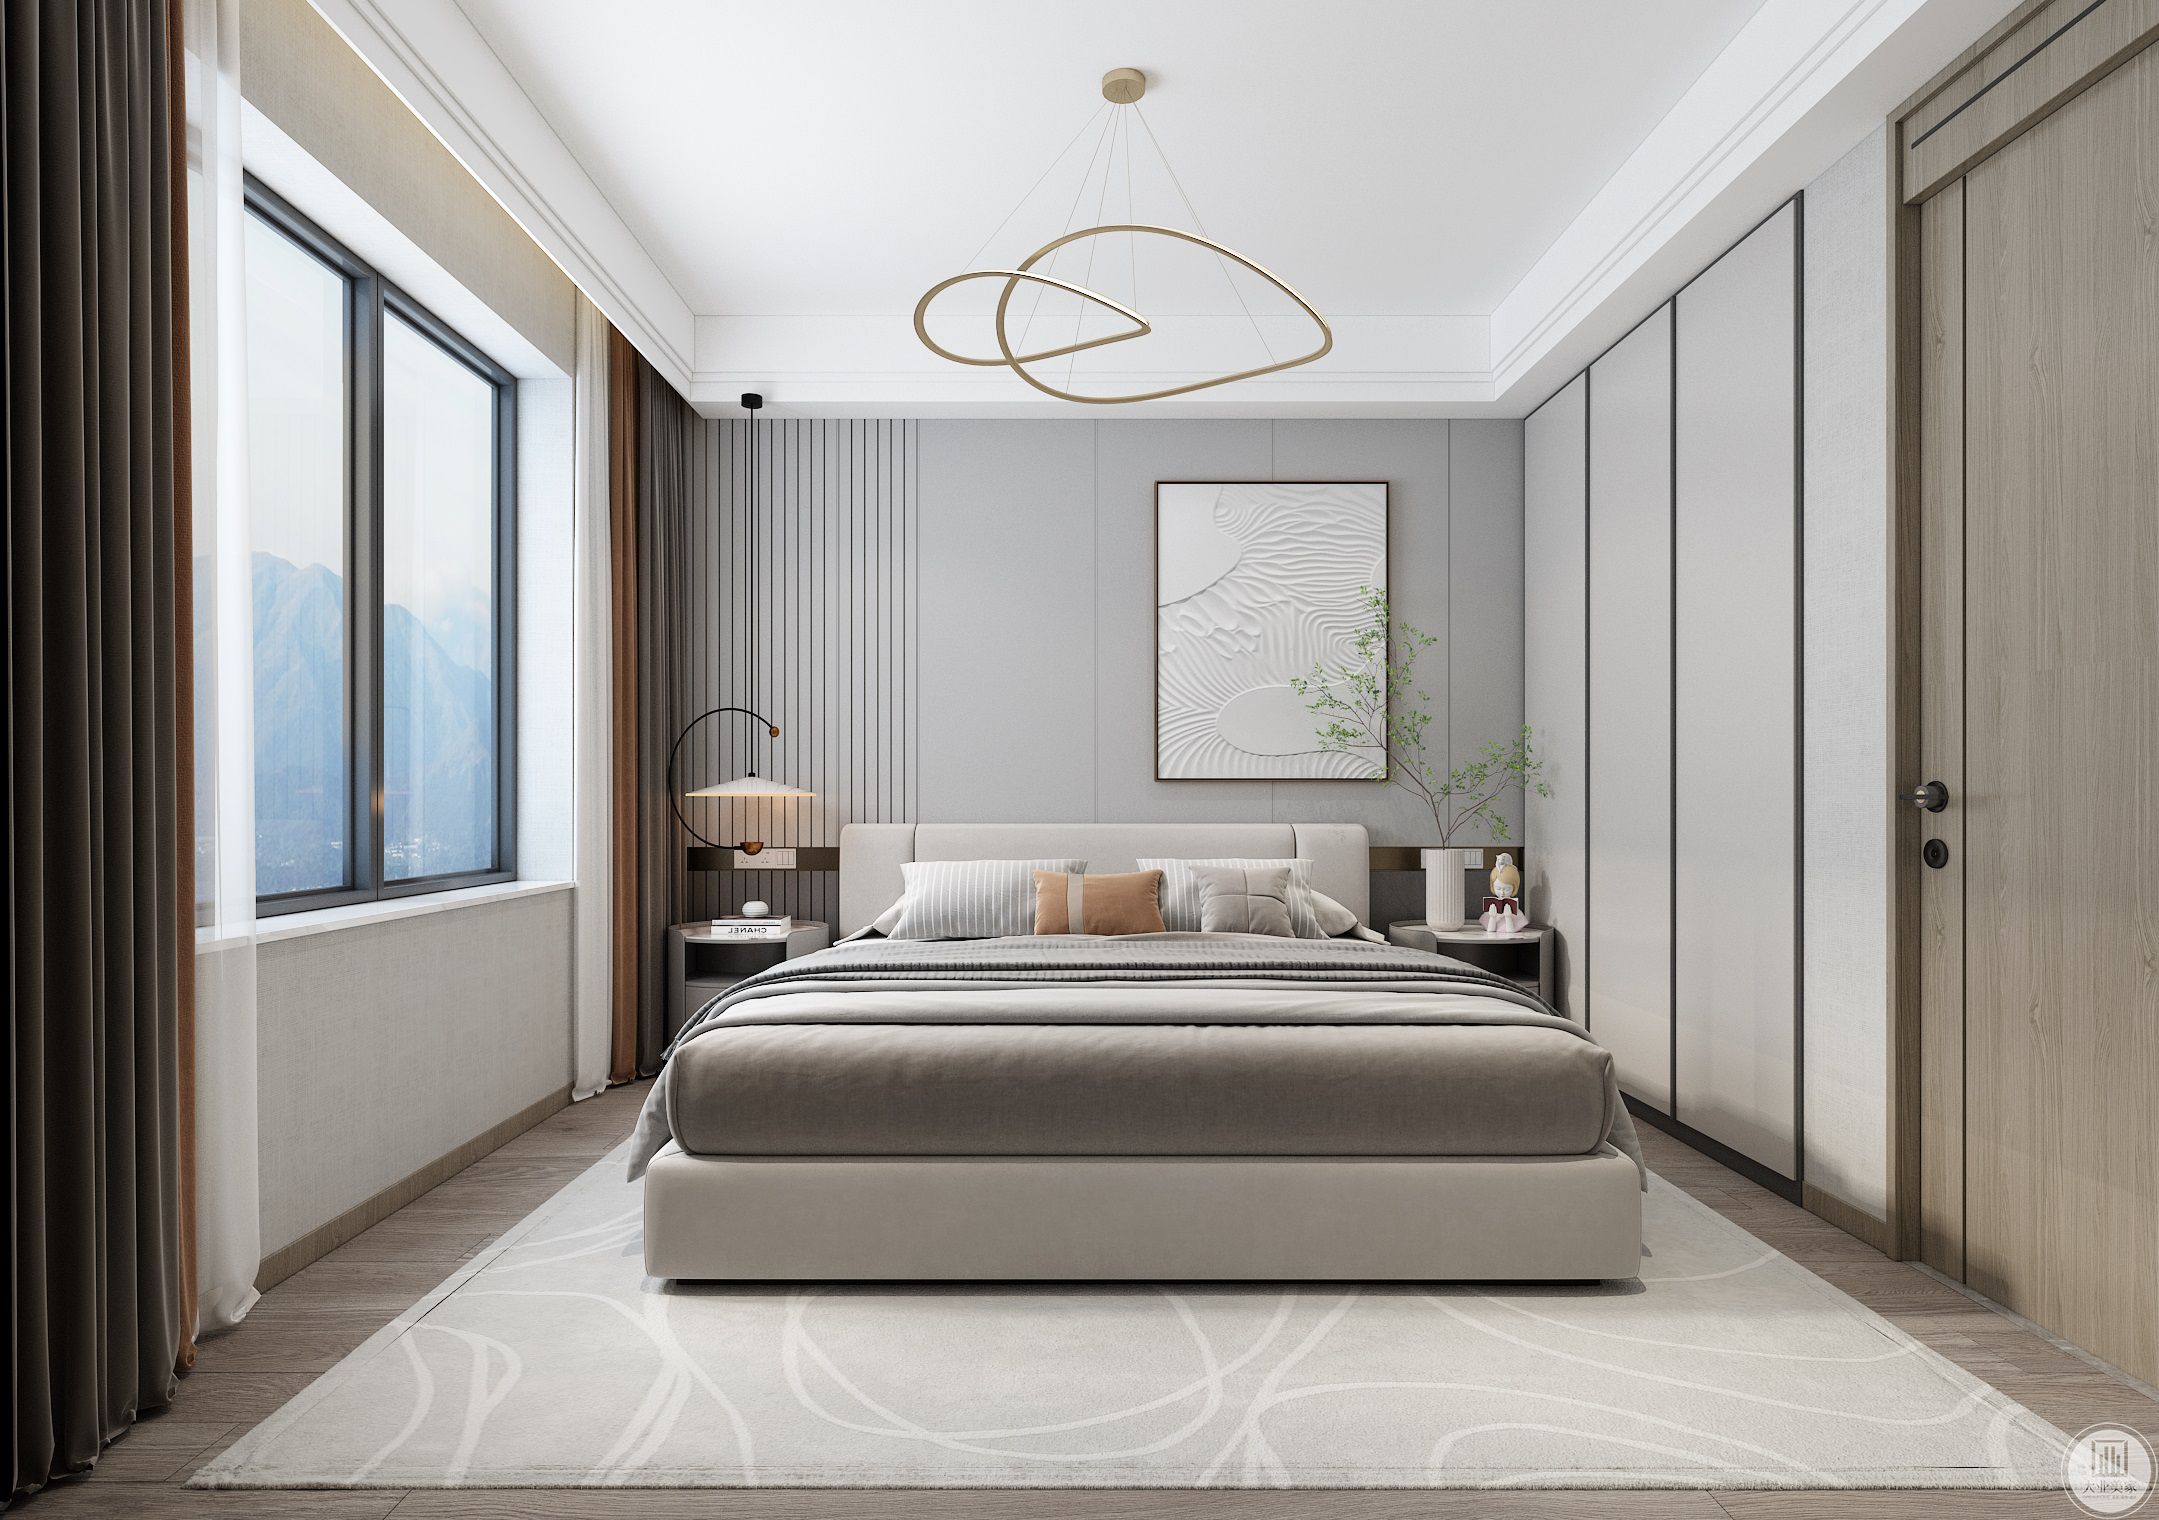 极简纯色系为主要基调的卧室，将休憩的轻快与放松充分释放。